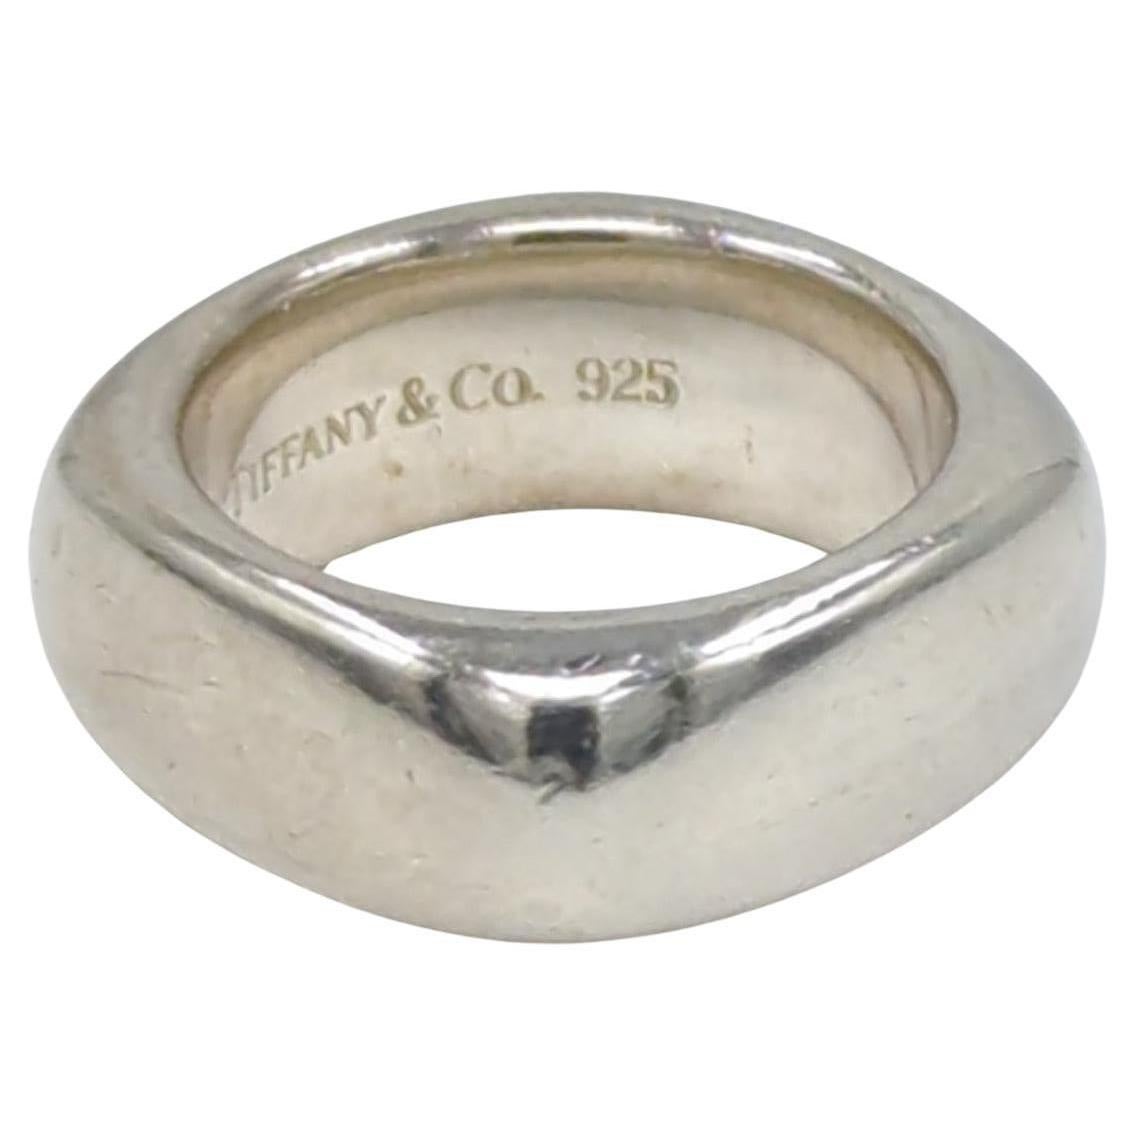 Tiffany & Co. Sterling Silber Quadratischer Ring mit Kissen
Größe 5-1/4
Guter gebrauchter Zustand